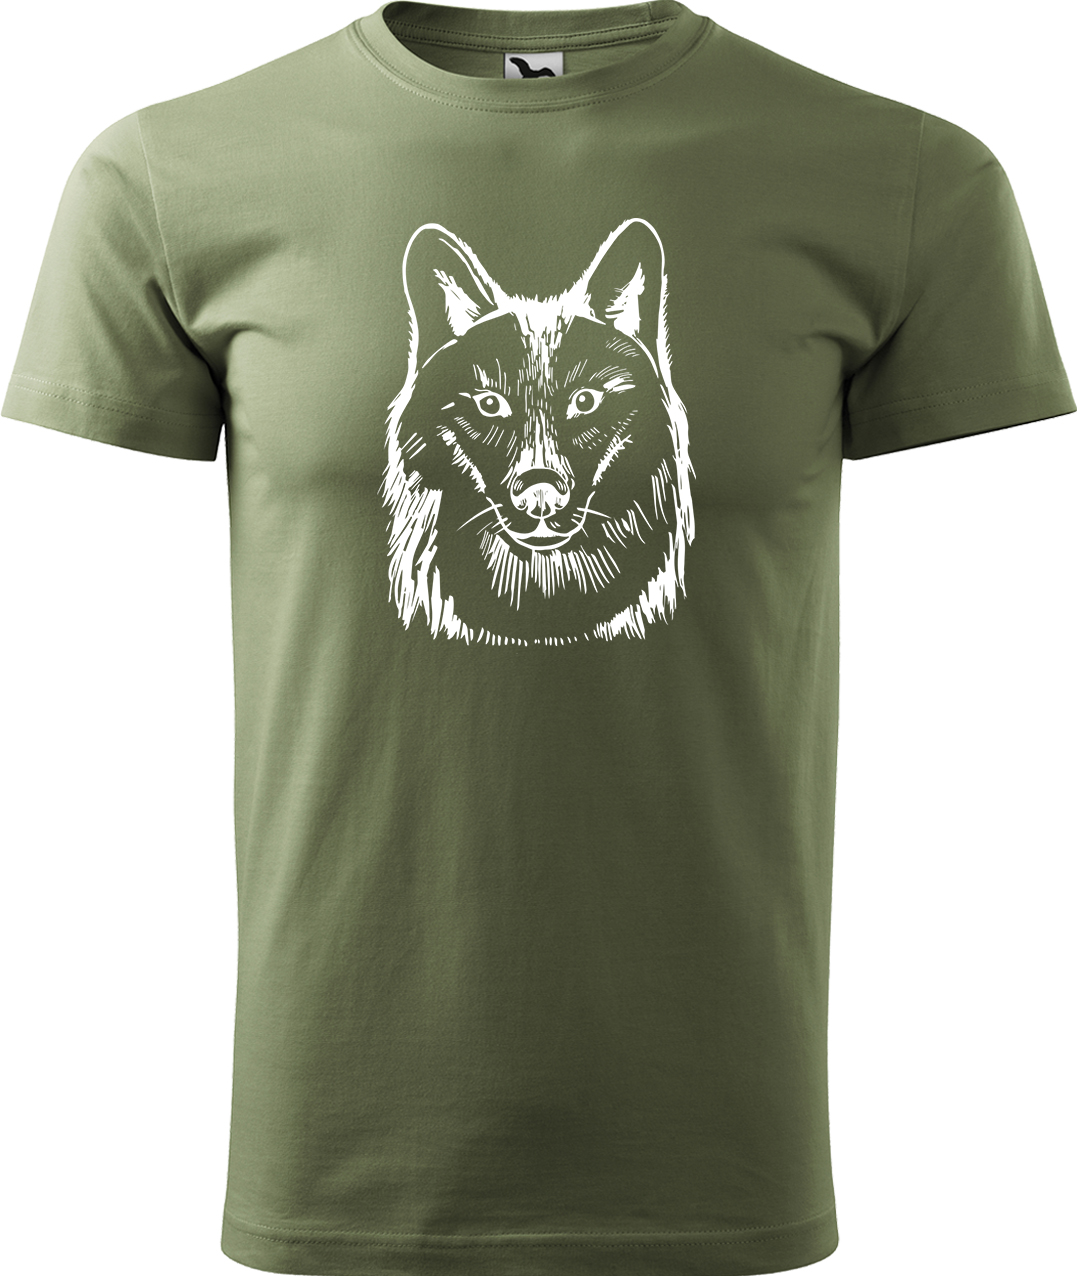 Pánské tričko s vlkem - Kresba vlka Velikost: 4XL, Barva: Světlá khaki (28), Střih: pánský